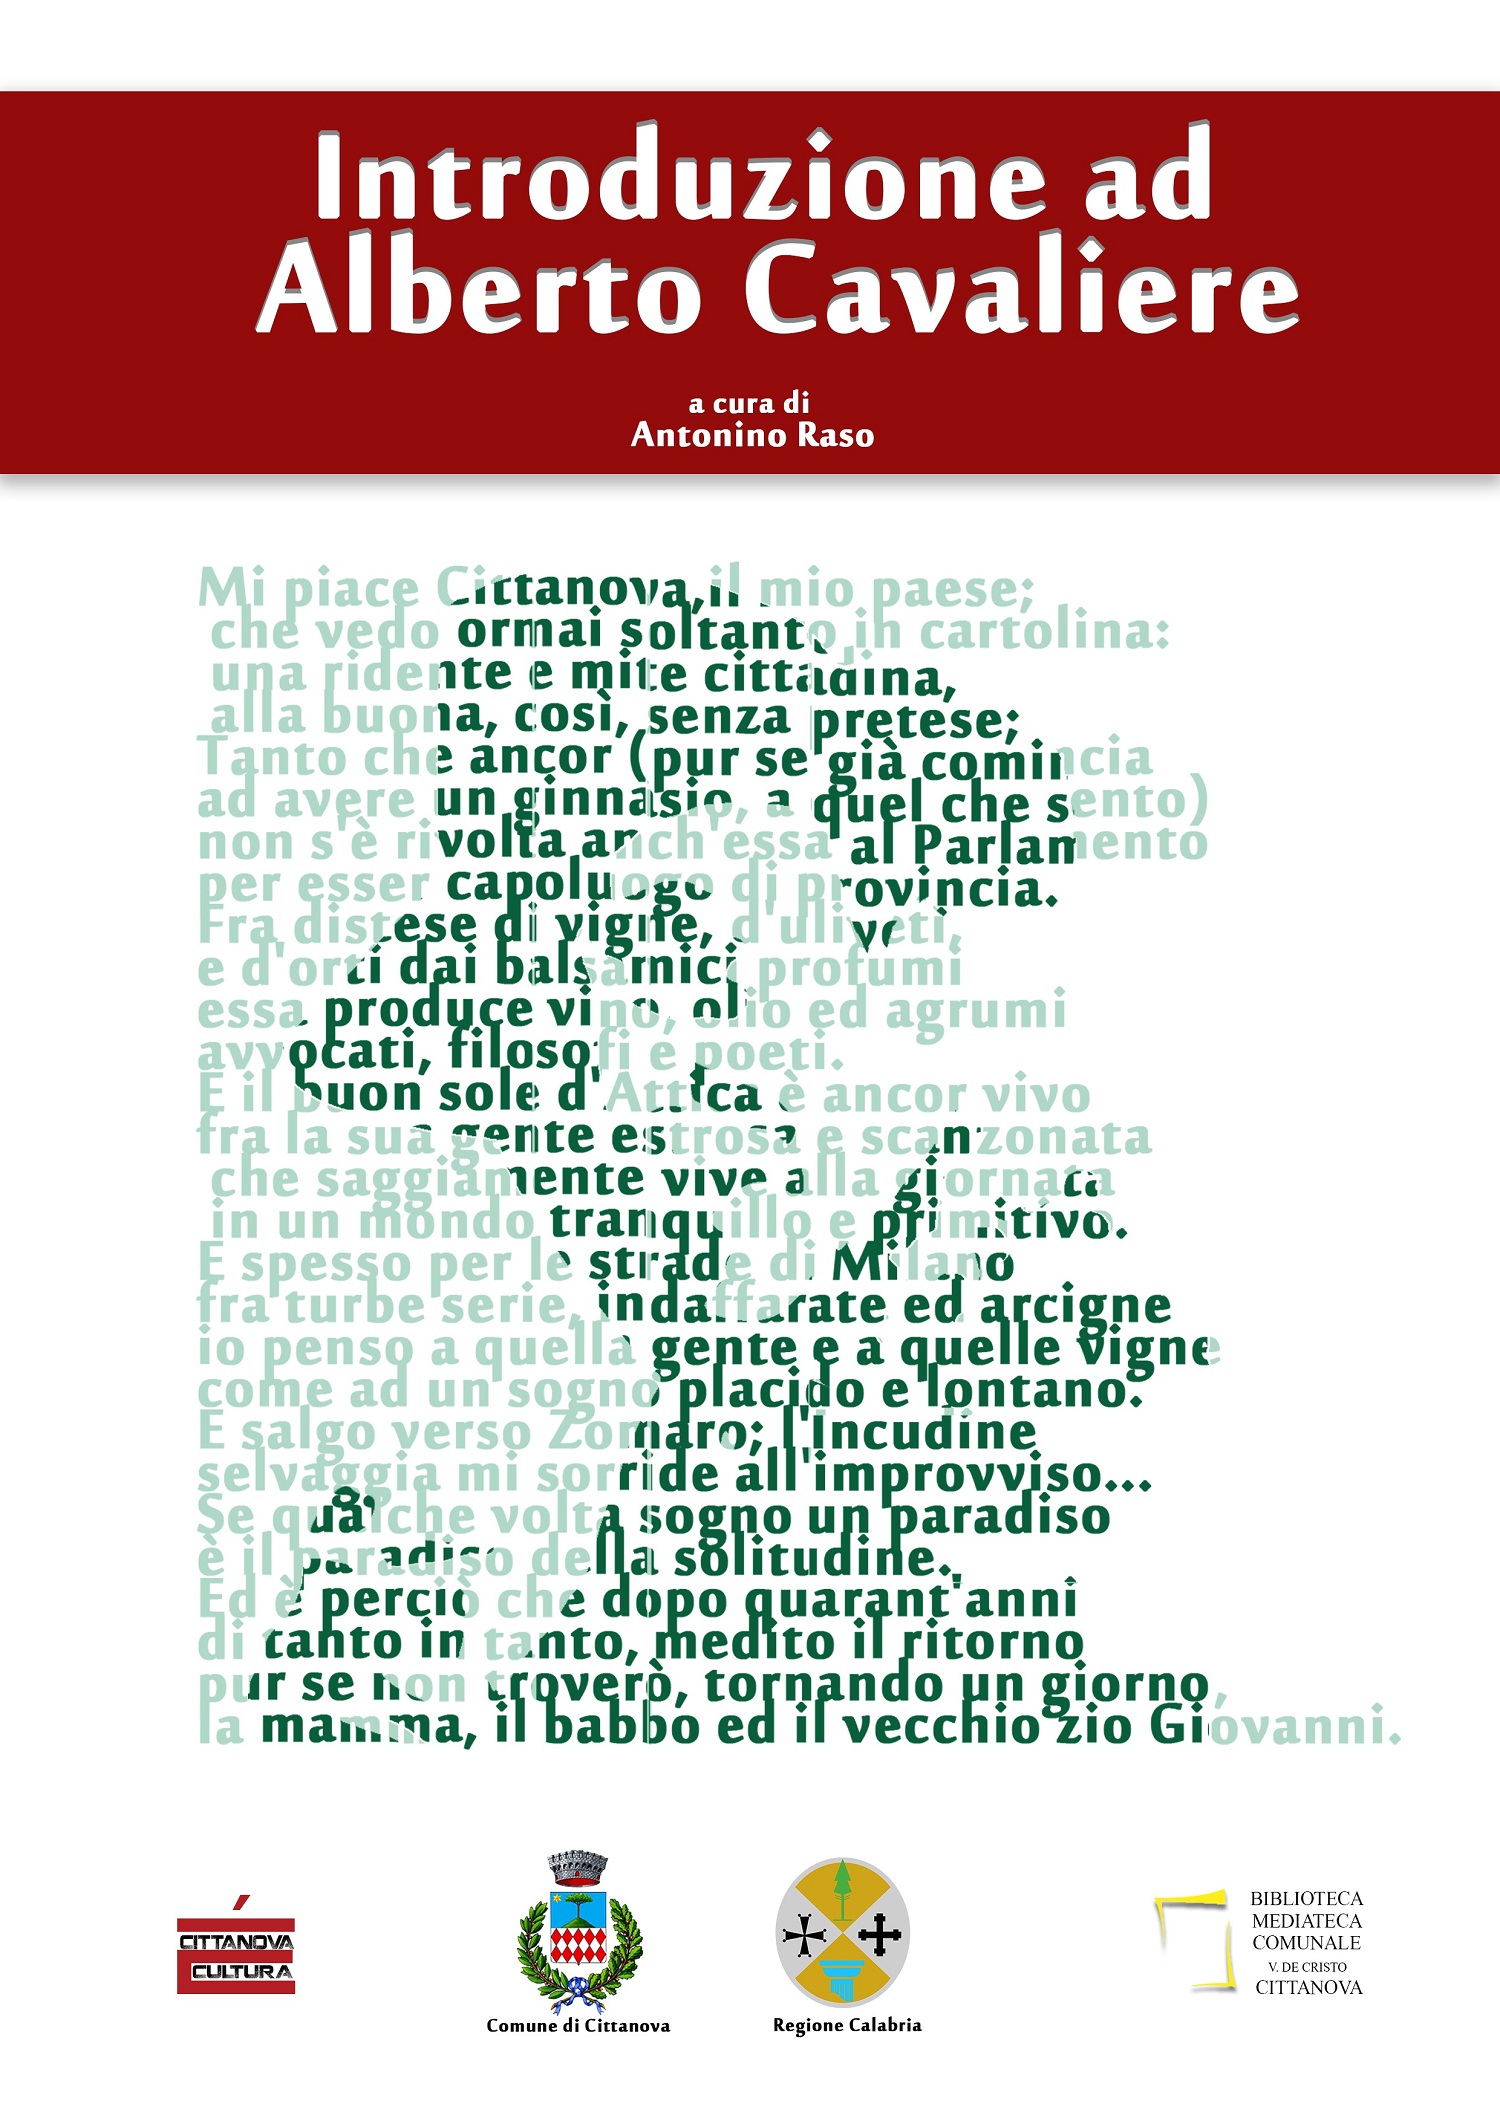 Introduzione ad Alberto Cavaliere” | DeliaPress.it